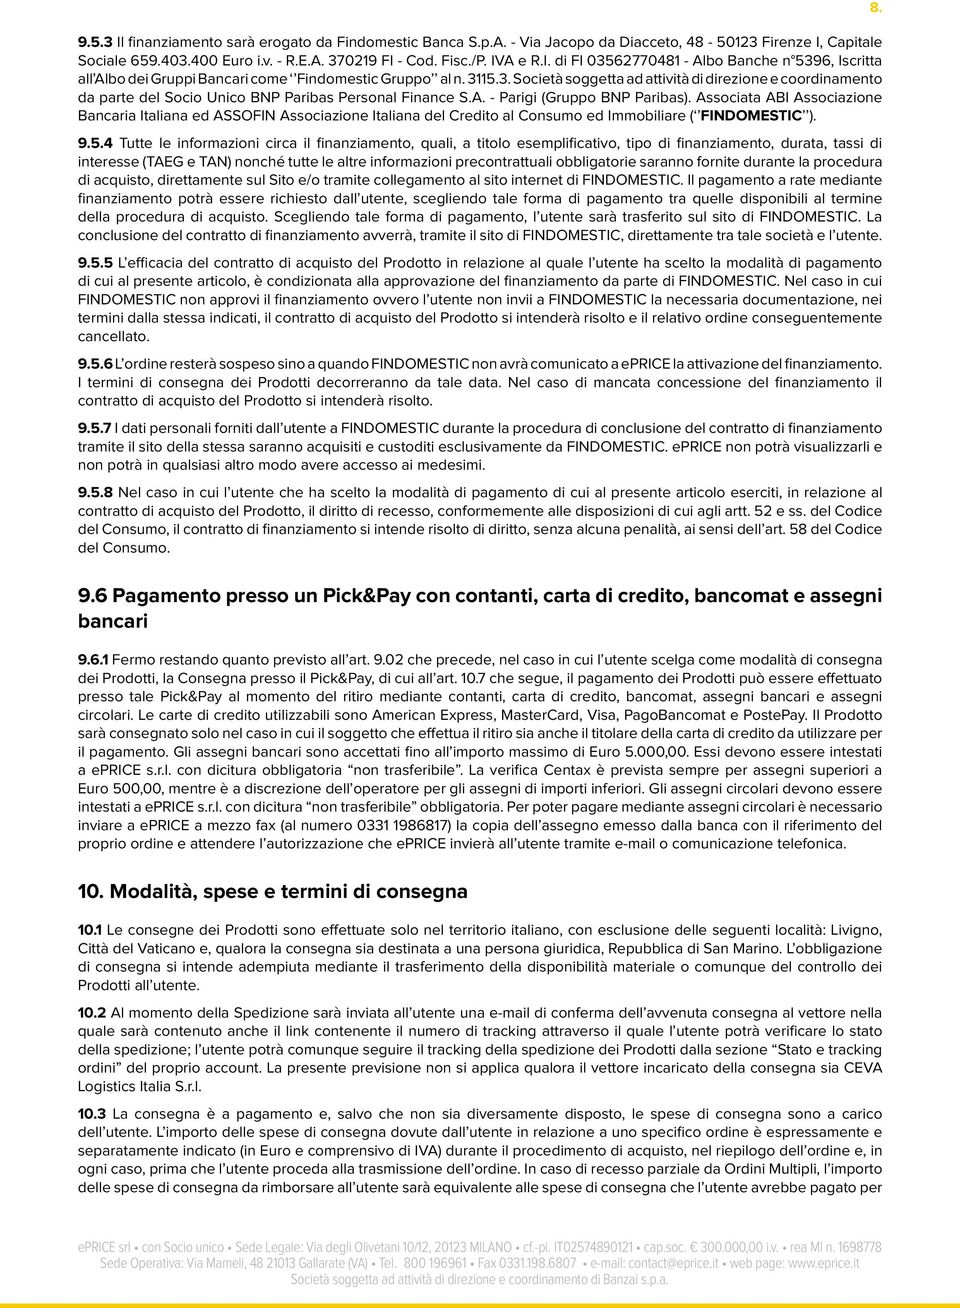 Associata ABI Associazione Bancaria Italiana ed ASSOFIN Associazione Italiana del Credito al Consumo ed Immobiliare ( FINDOMESTIC ). 9.5.